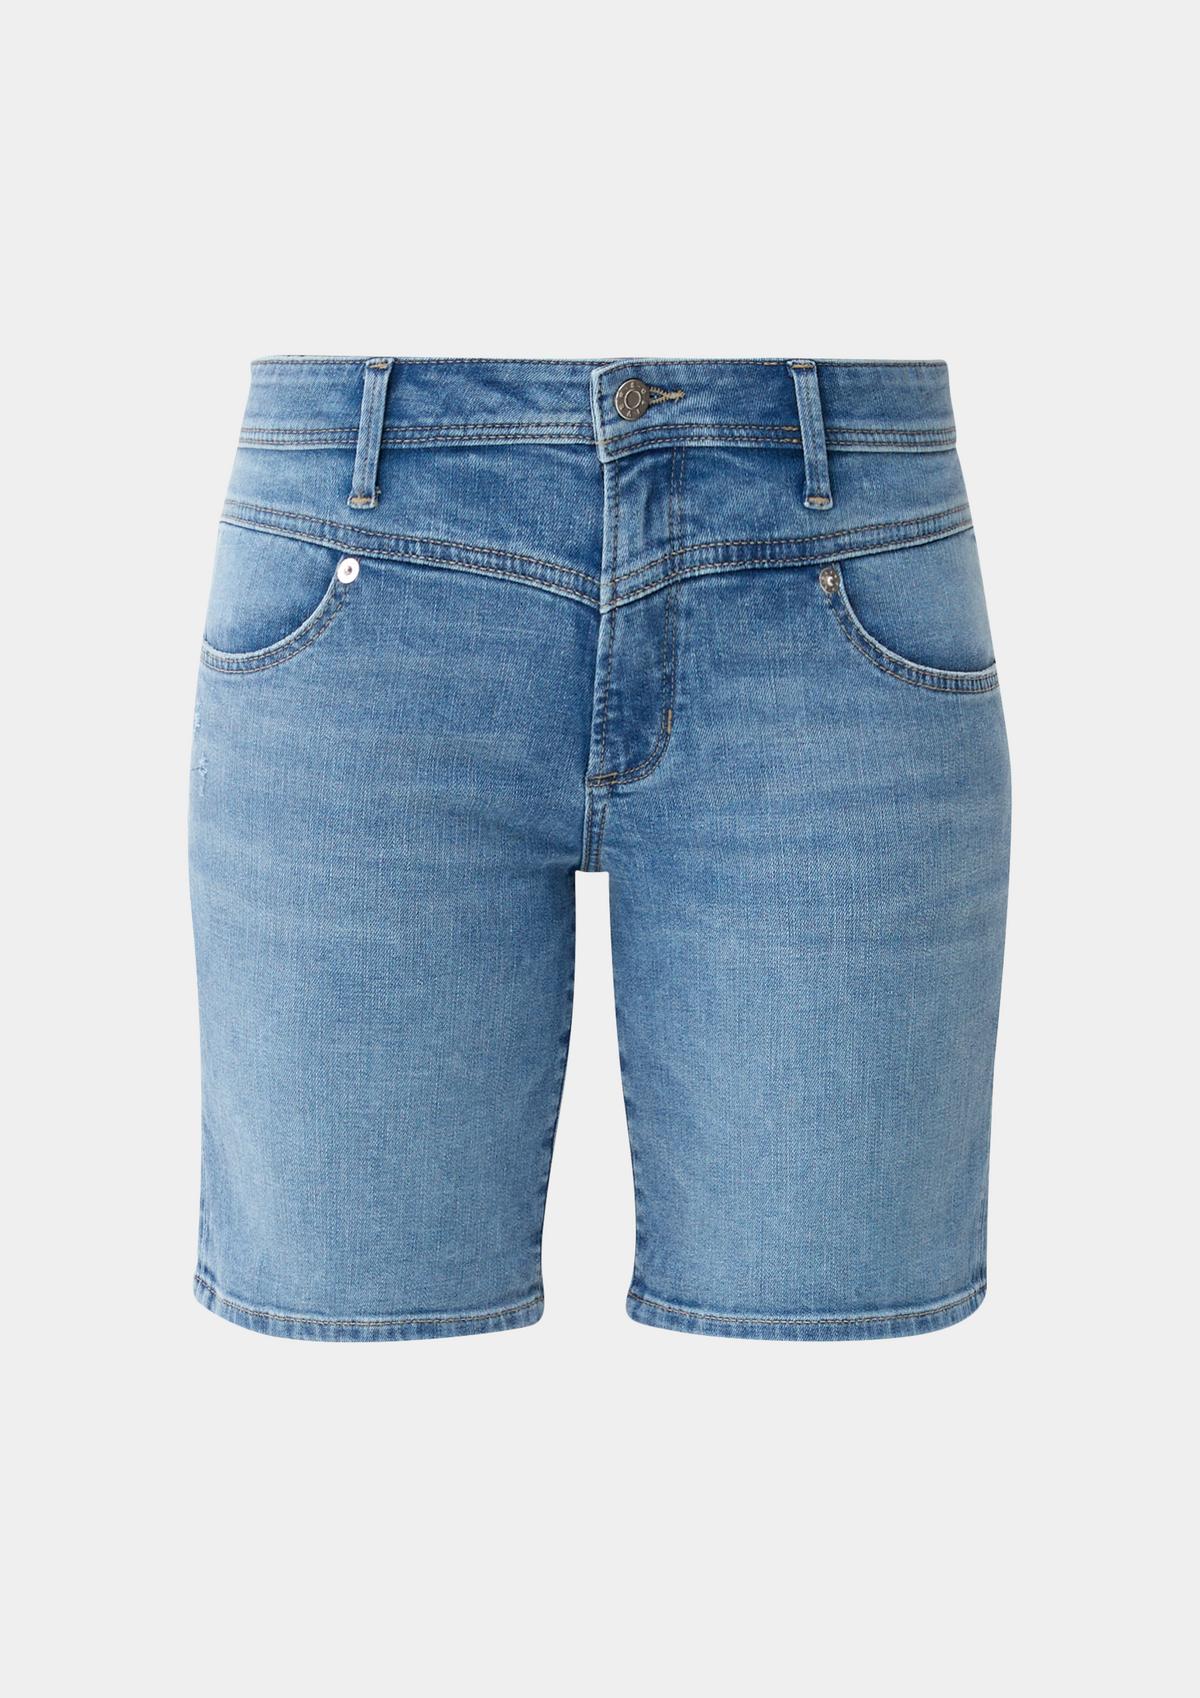 Slim fit: yoke light with saddle - blue Bermuda shorts